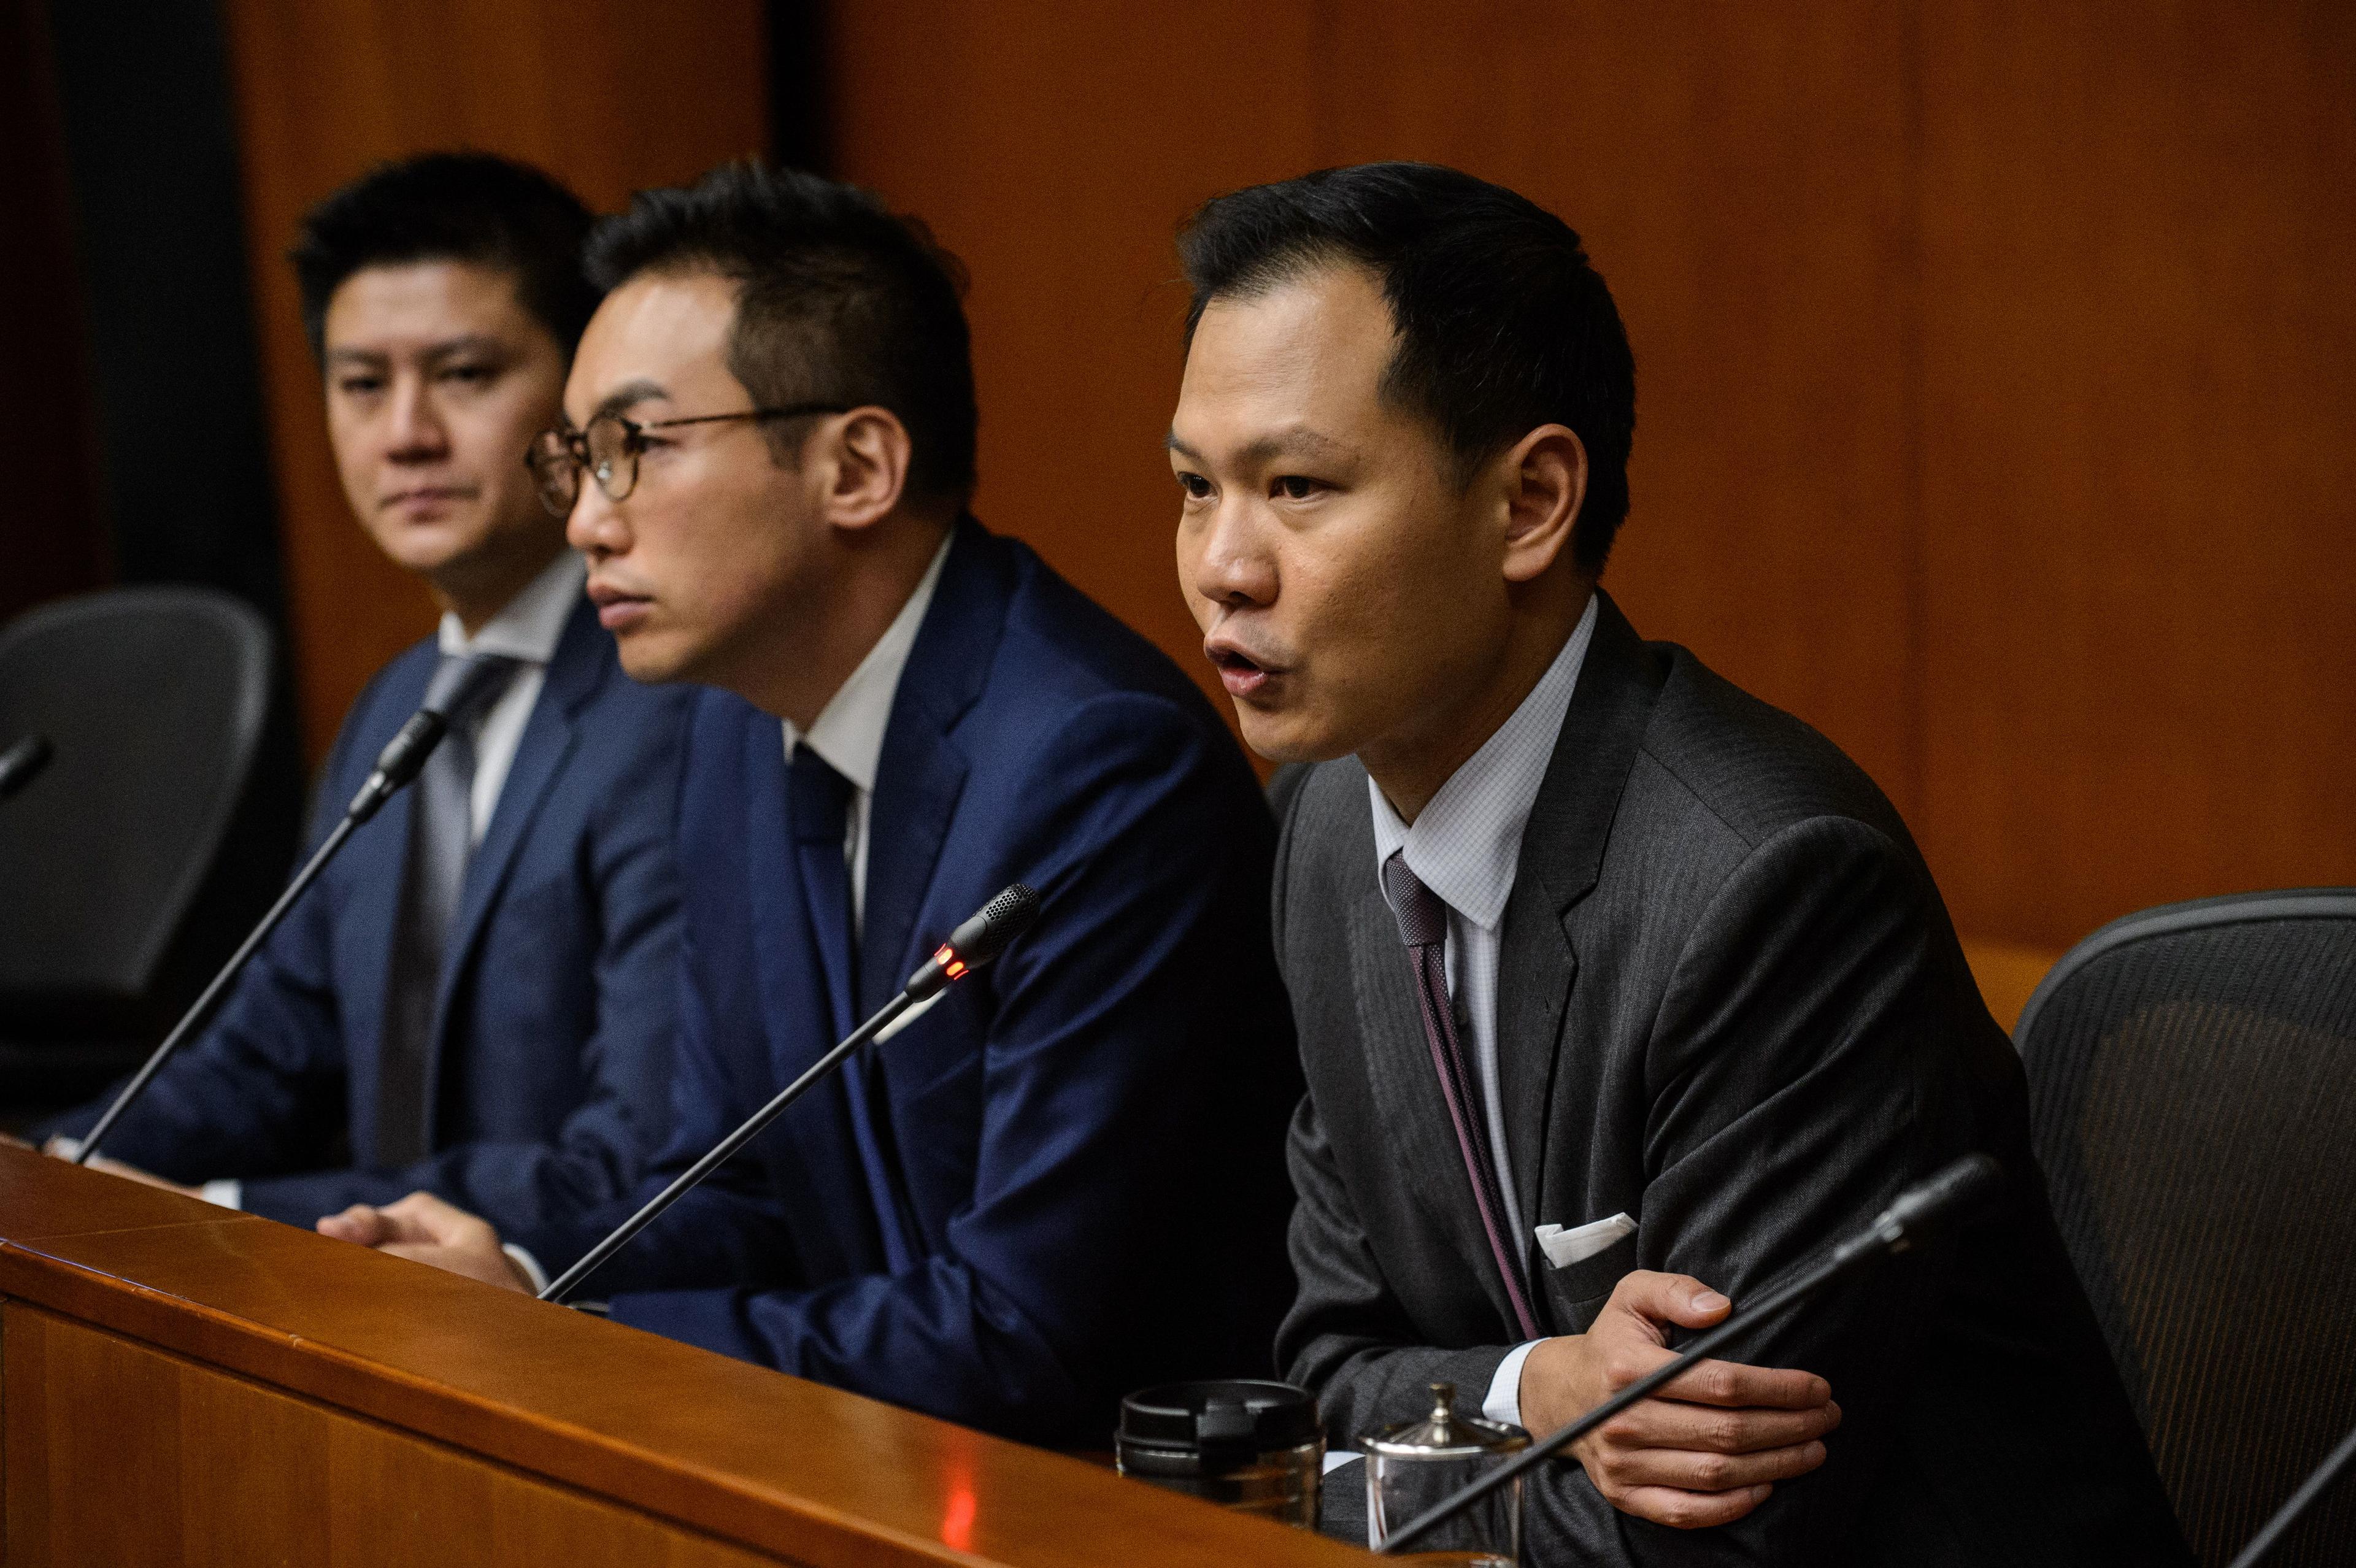 Alvin Yeung (mitten) och Dennis Kwok (höger) från Civic Party, under en presskonferens den 7 november, efter Pekings beslut att tolka Hongkongs grundlag. Prodemokratiska politiker och experter har oroats och upprörts över Pekings ovanliga beslut att direkt och oombett ingripa i Hongkongs grundlagsfrågor. (Foto: Anthony Wallace/AFP/Getty Images)